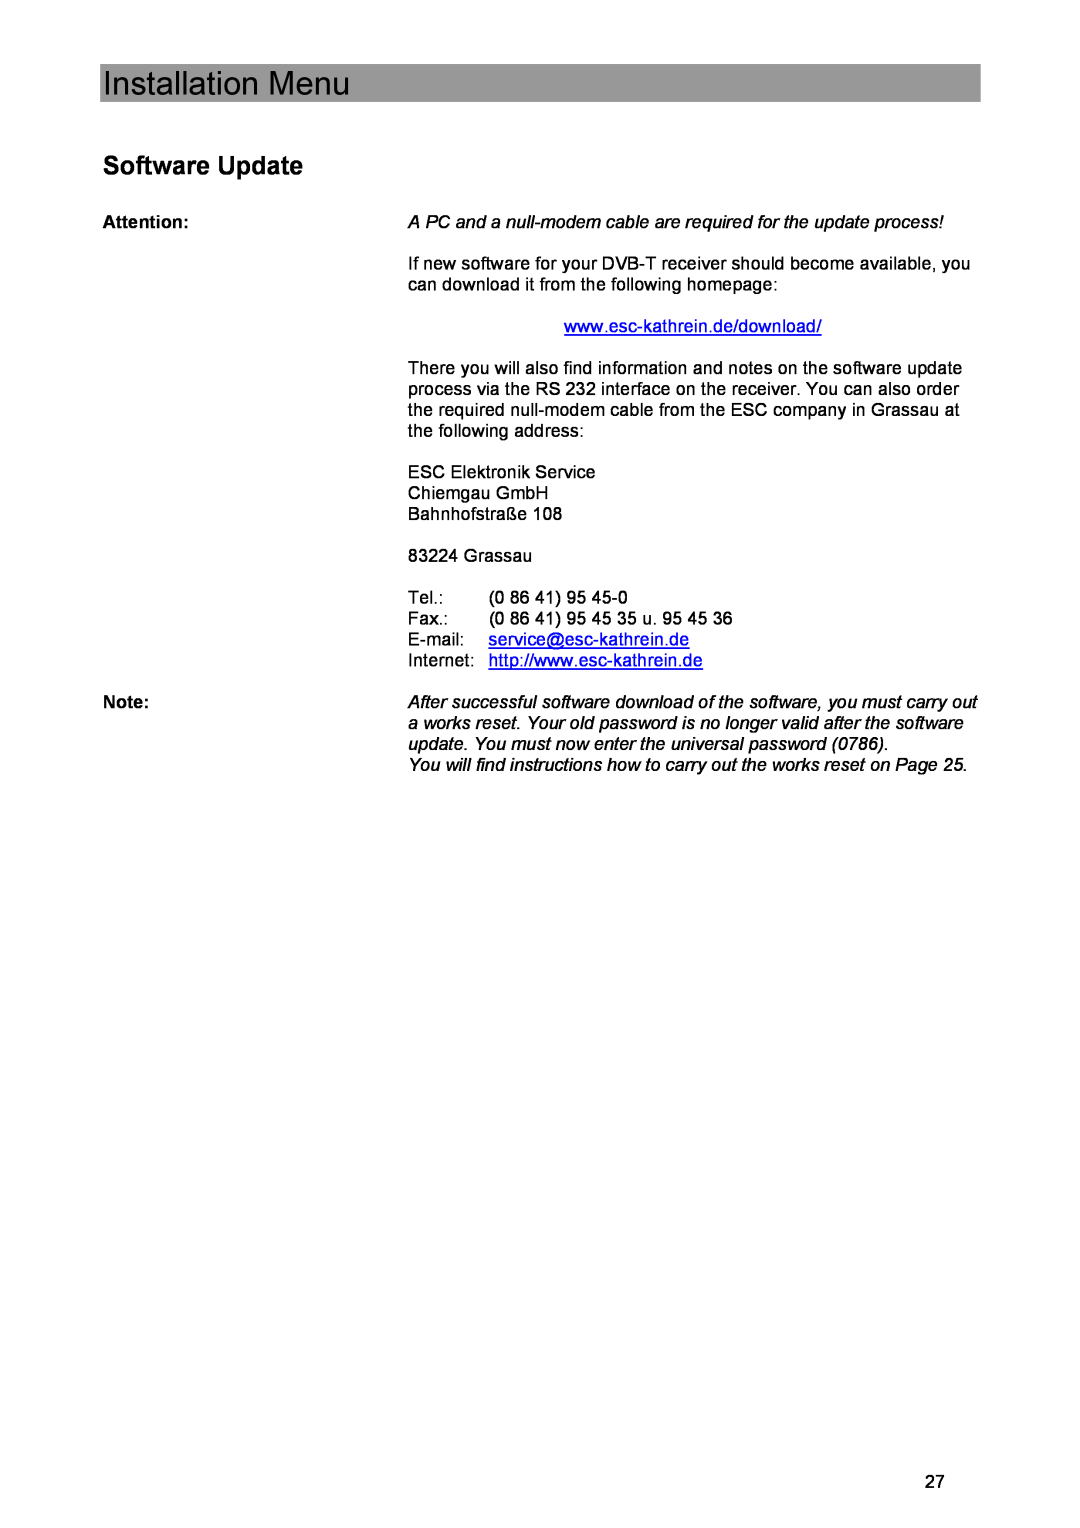 Kathrein UFE 371/S manual Software Update, Installation Menu, service@esc-kathrein.de 